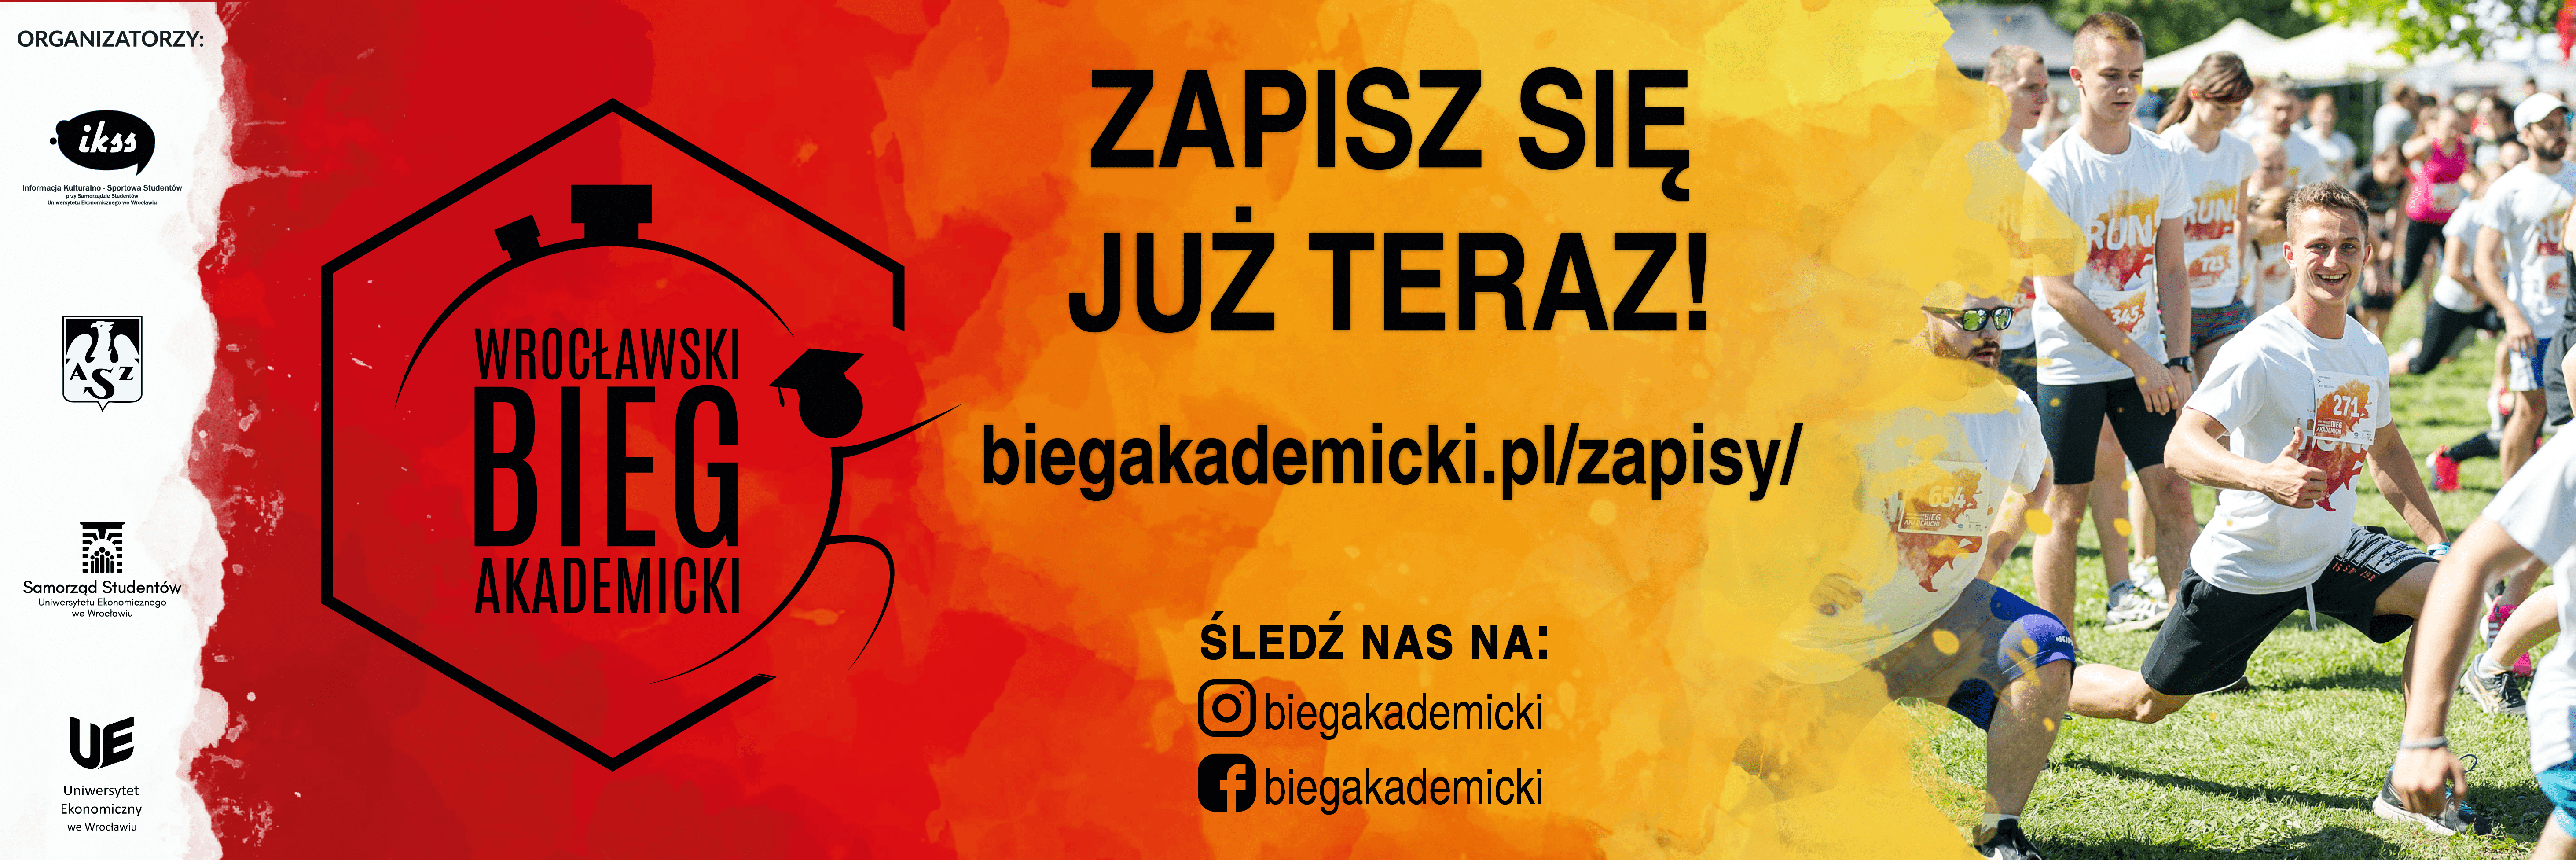 12 maja 2019 roku już po raz piąty będziemy mogli wziąć udział we Wrocławskim Biegu Akademickim, który odbędzie się w Parku Grabiszyńskim. 